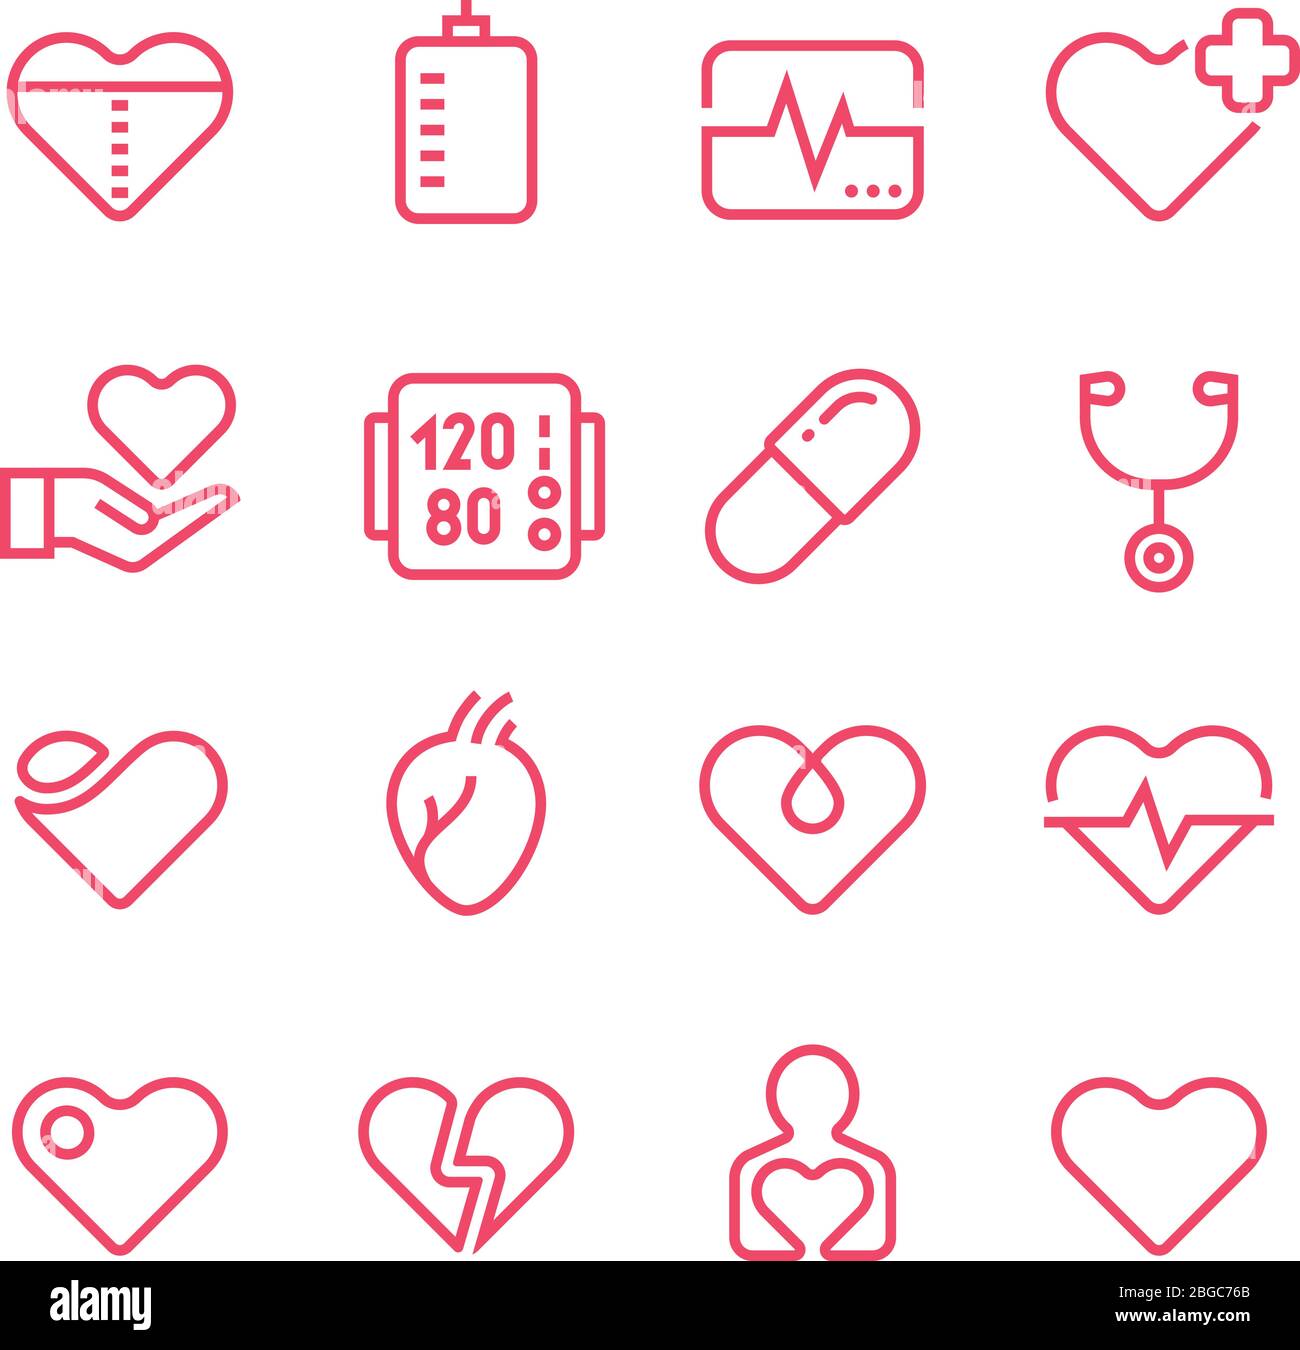 Icone della linea vettoriale per medicina cardiologica. Simboli vettoriali cardiologi e cardiopatici. Icone della linea cardiaca sanitaria. Illustrazione della medicina cardiologica Illustrazione Vettoriale